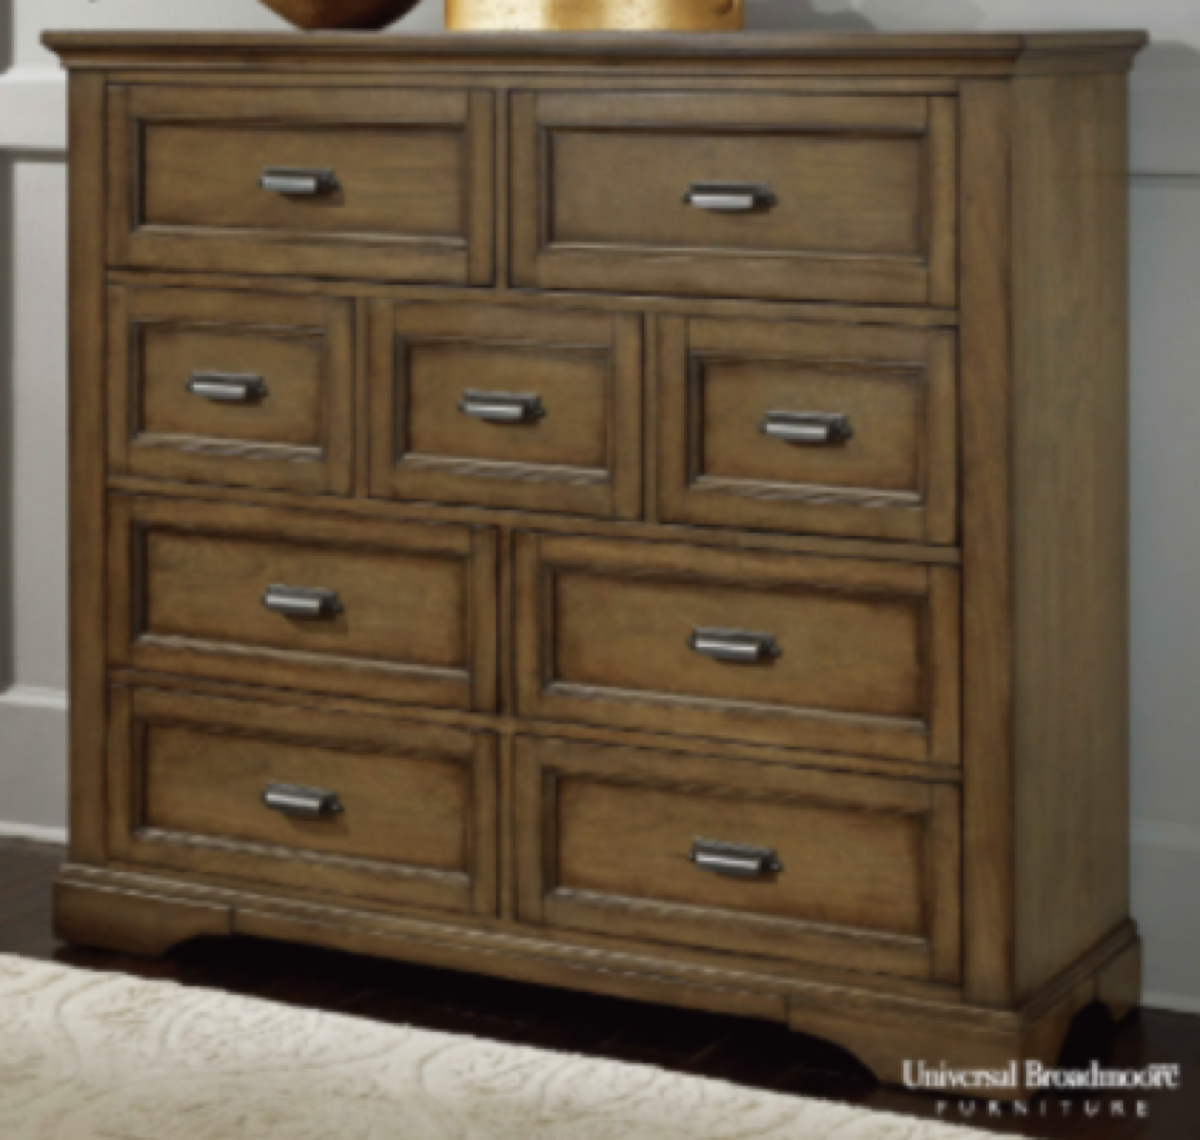 recalled Costco Universal Broadmoore Cayden Gentleman's 9-drawer chests